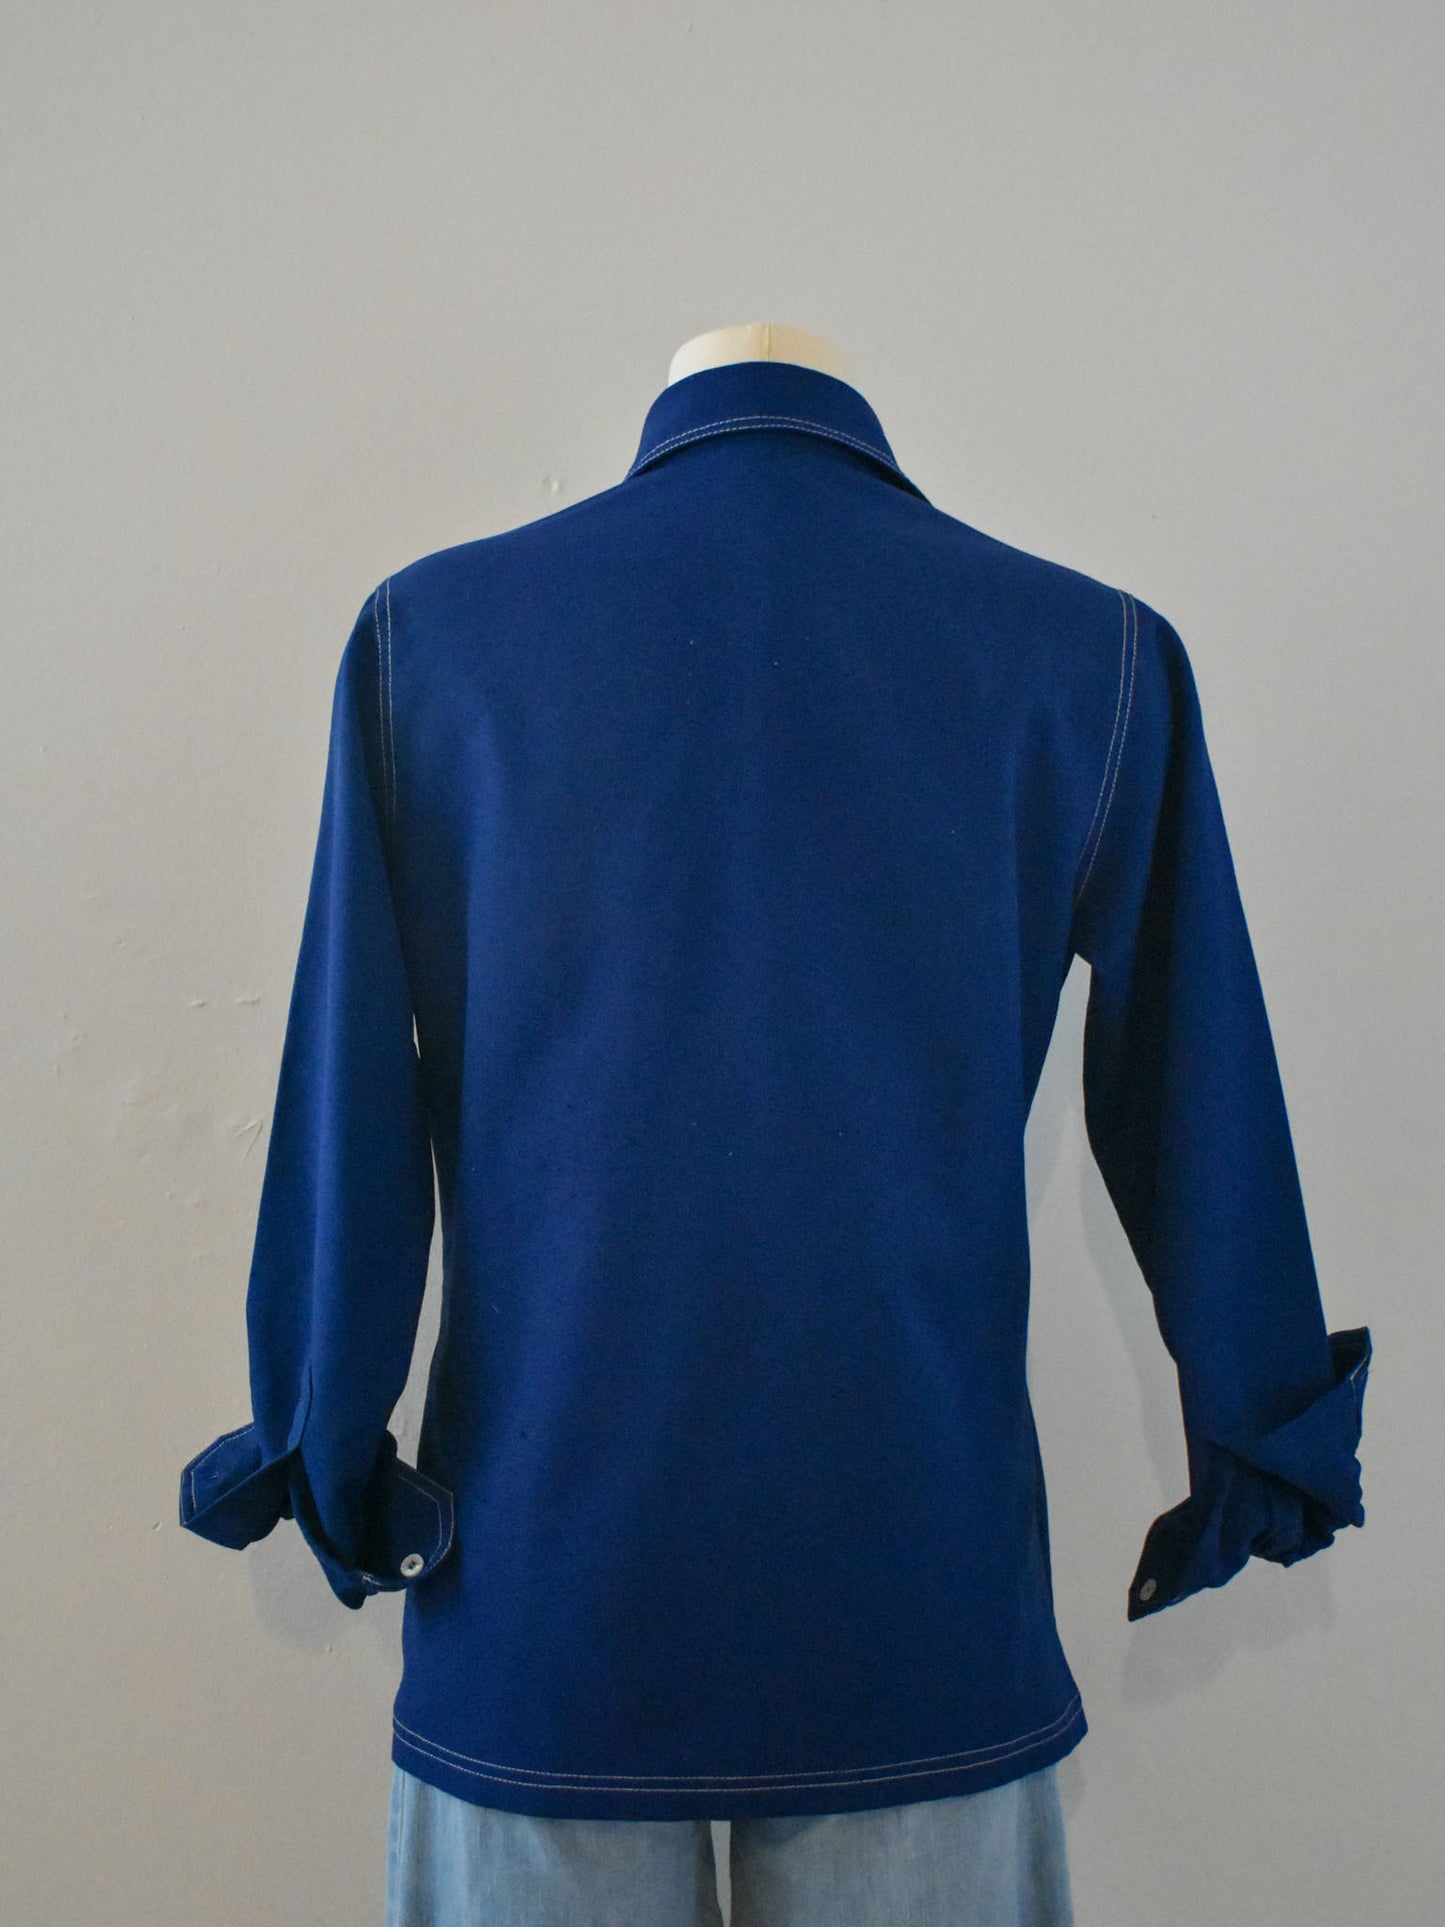 Blue Shirt (M)